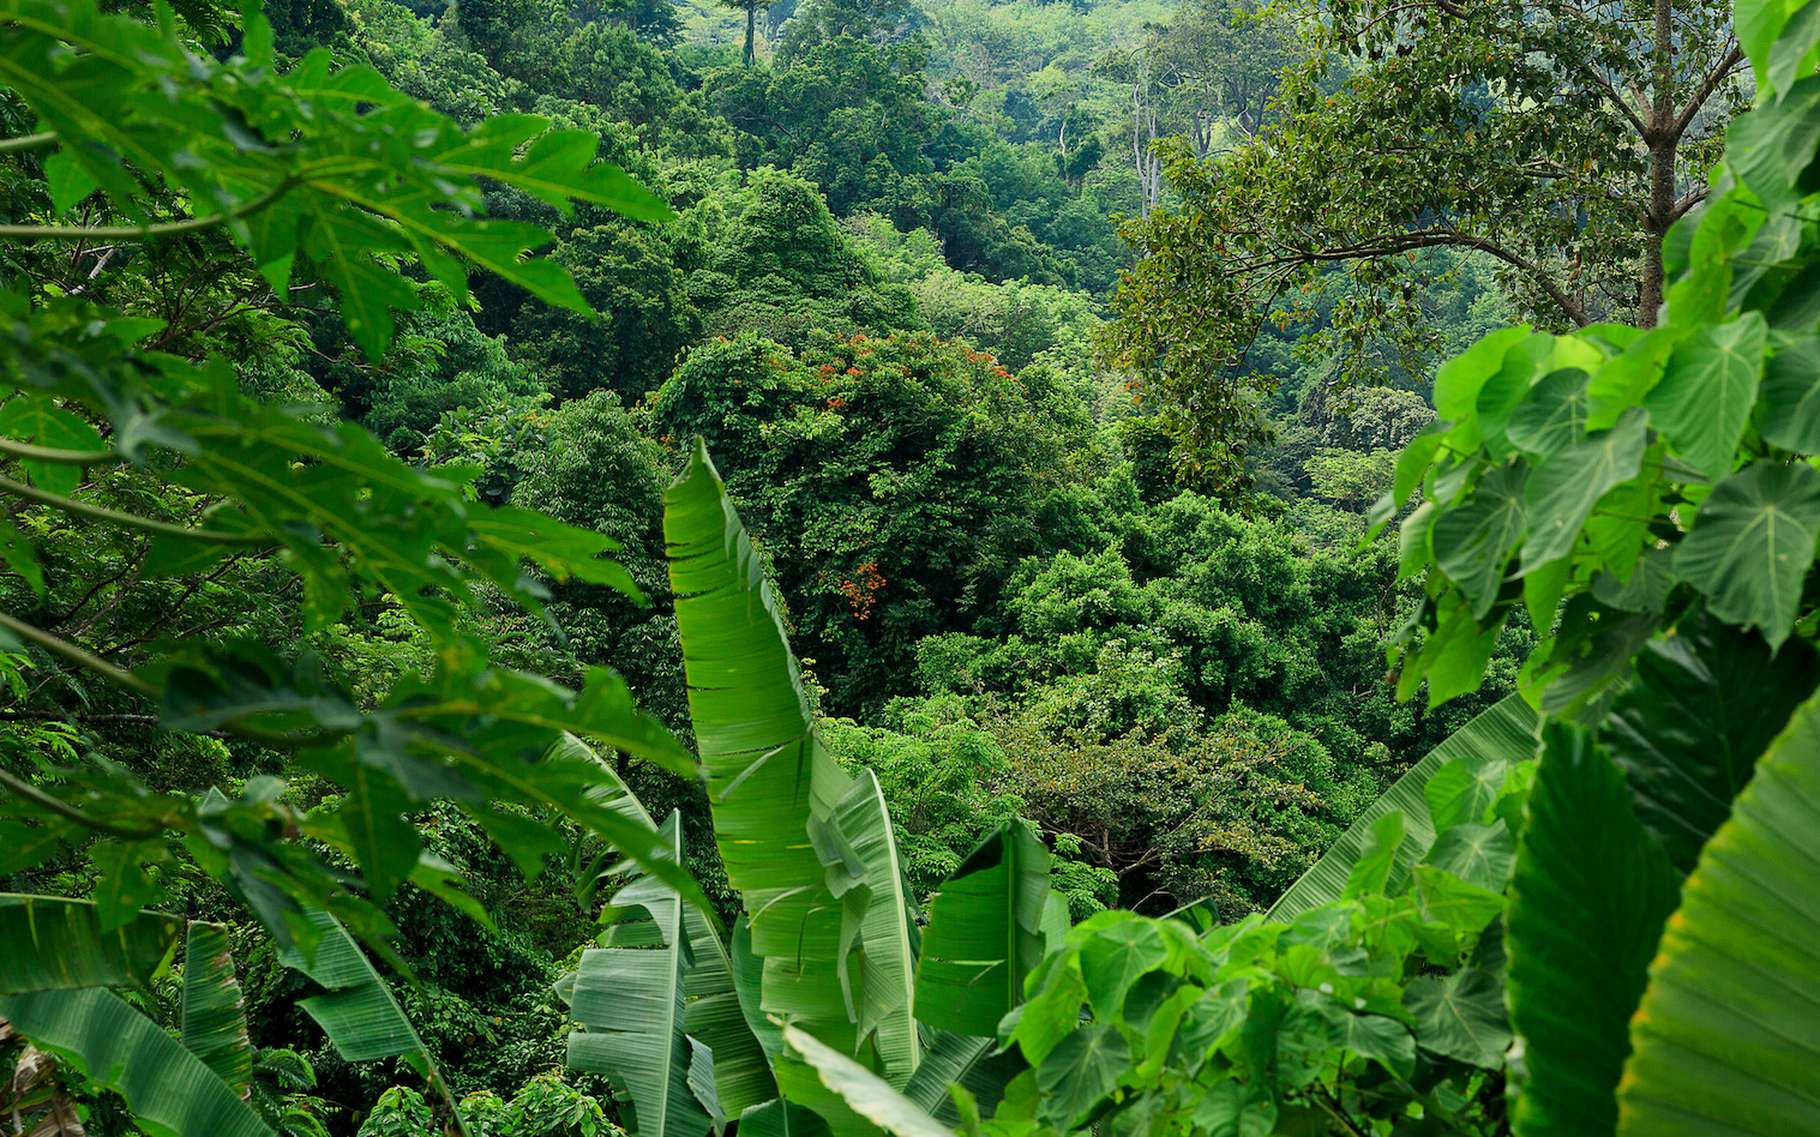 Les forêts tropicales, en général, sont des écosystèmes à préserver. Celle du Congo est menacée par des projets d’exploitations pétrolières. © Ilya, Adobe Stock